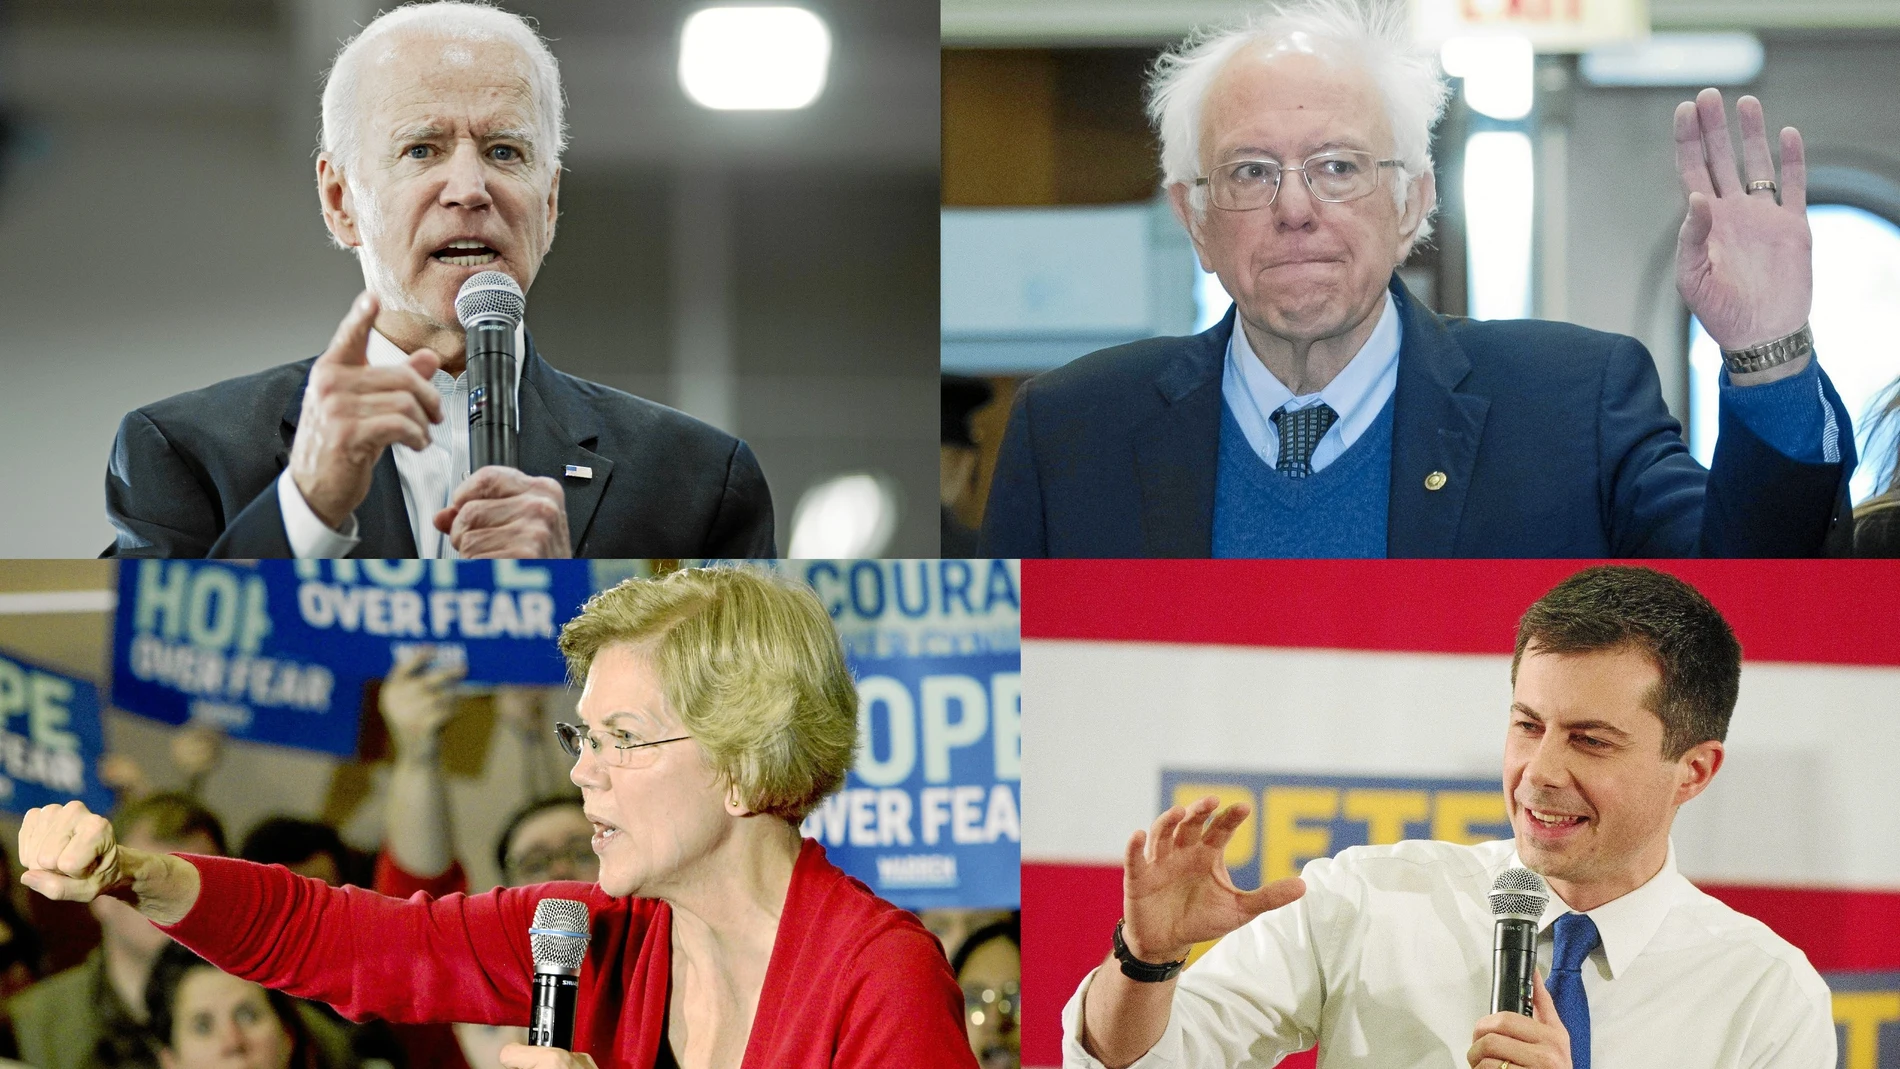 El ex vicepresidente de EE UU, Joe Biden (arriba izq.), el veterano senador Bernie Sanders (arriba der.), la senadora y precandidata demócrata Elizabeth Worren (abajo izq.) y el ex alcalde Peter Buttigieg (abajo der.)